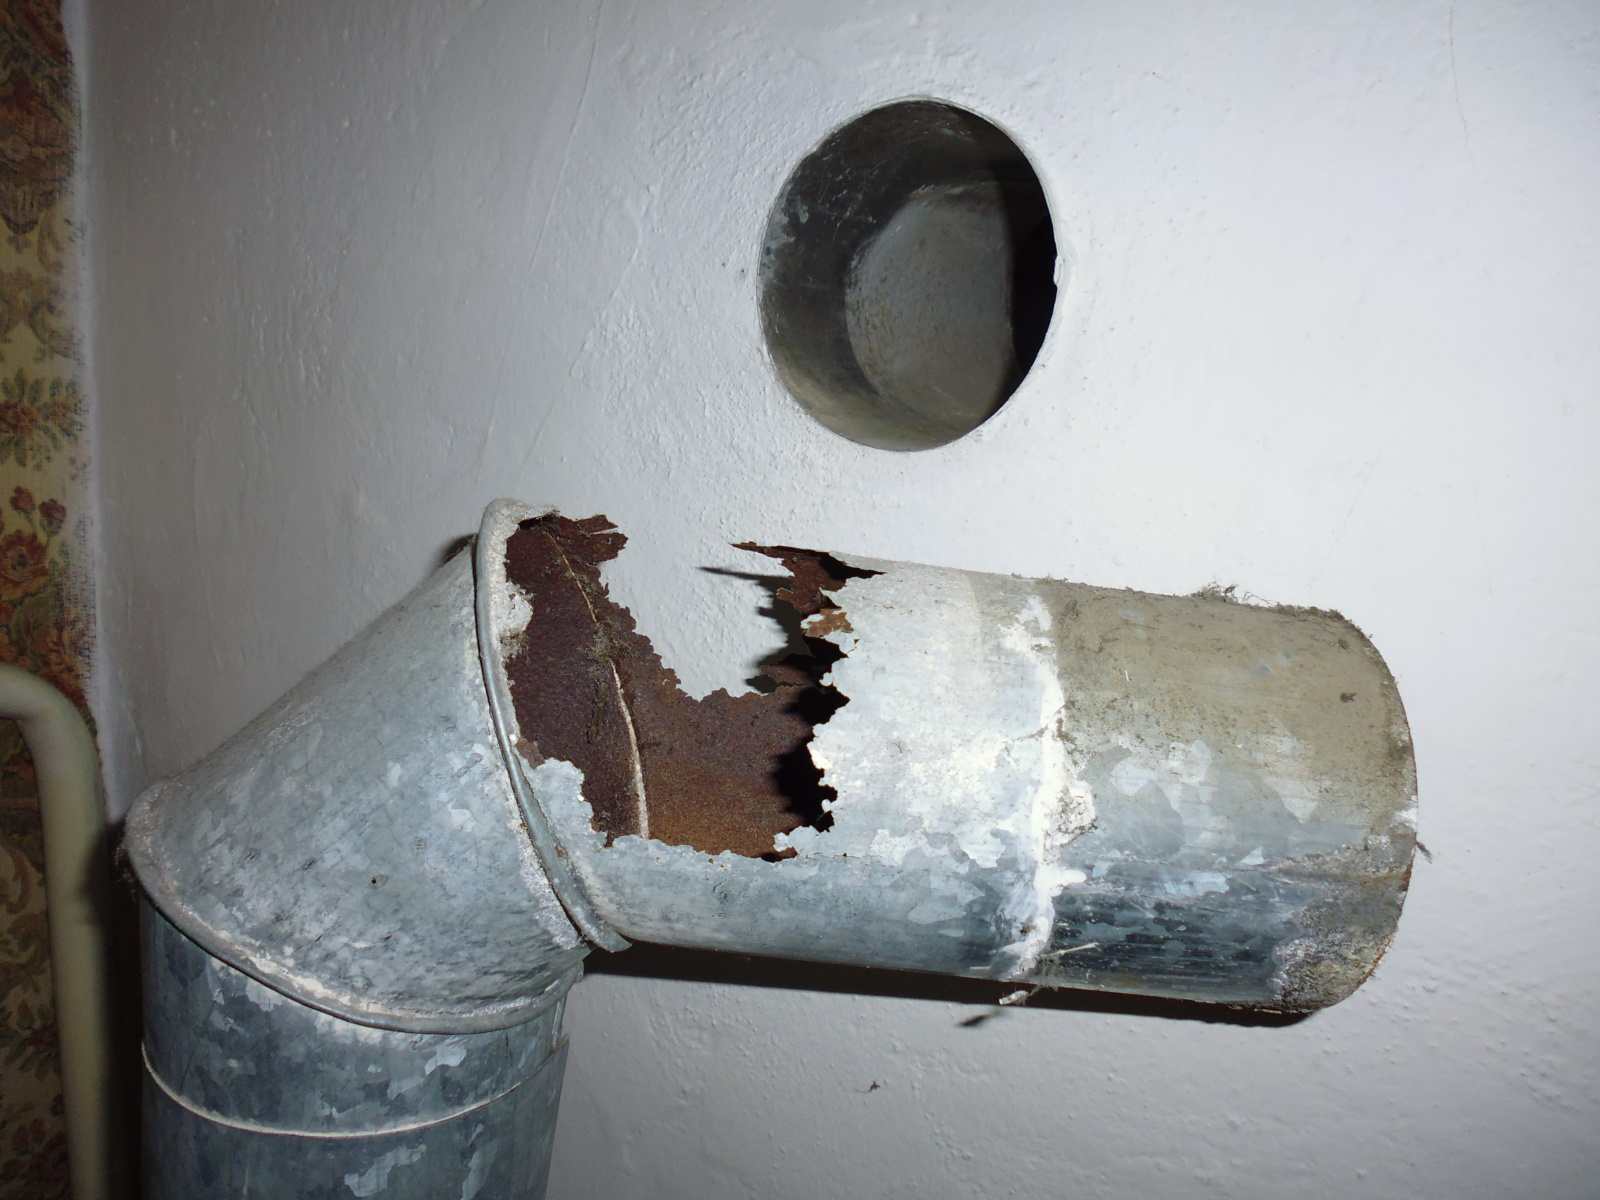 kouřovod plynového kotle zavěšeného pod stropem bytu - kominík uznal za vyhovující